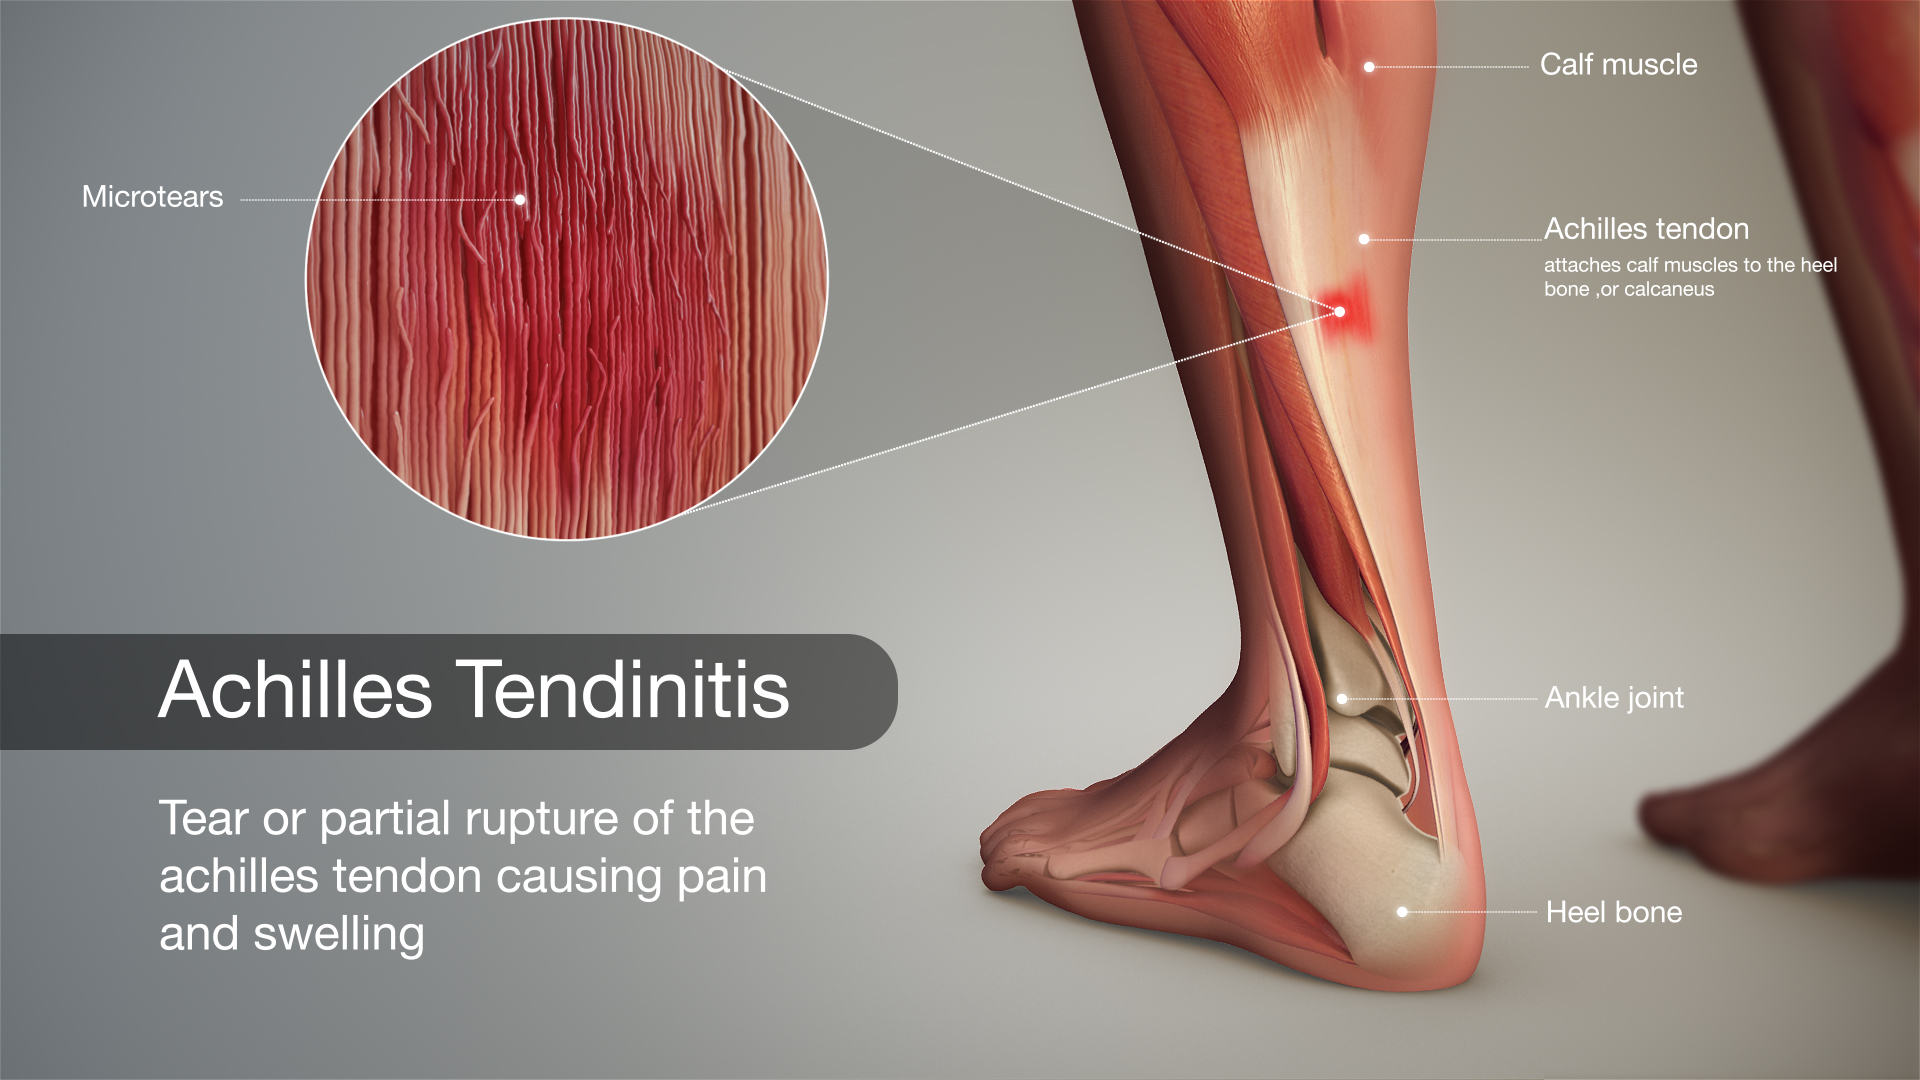 Achilles Tendon Tear Symptoms, Causes & Treatment